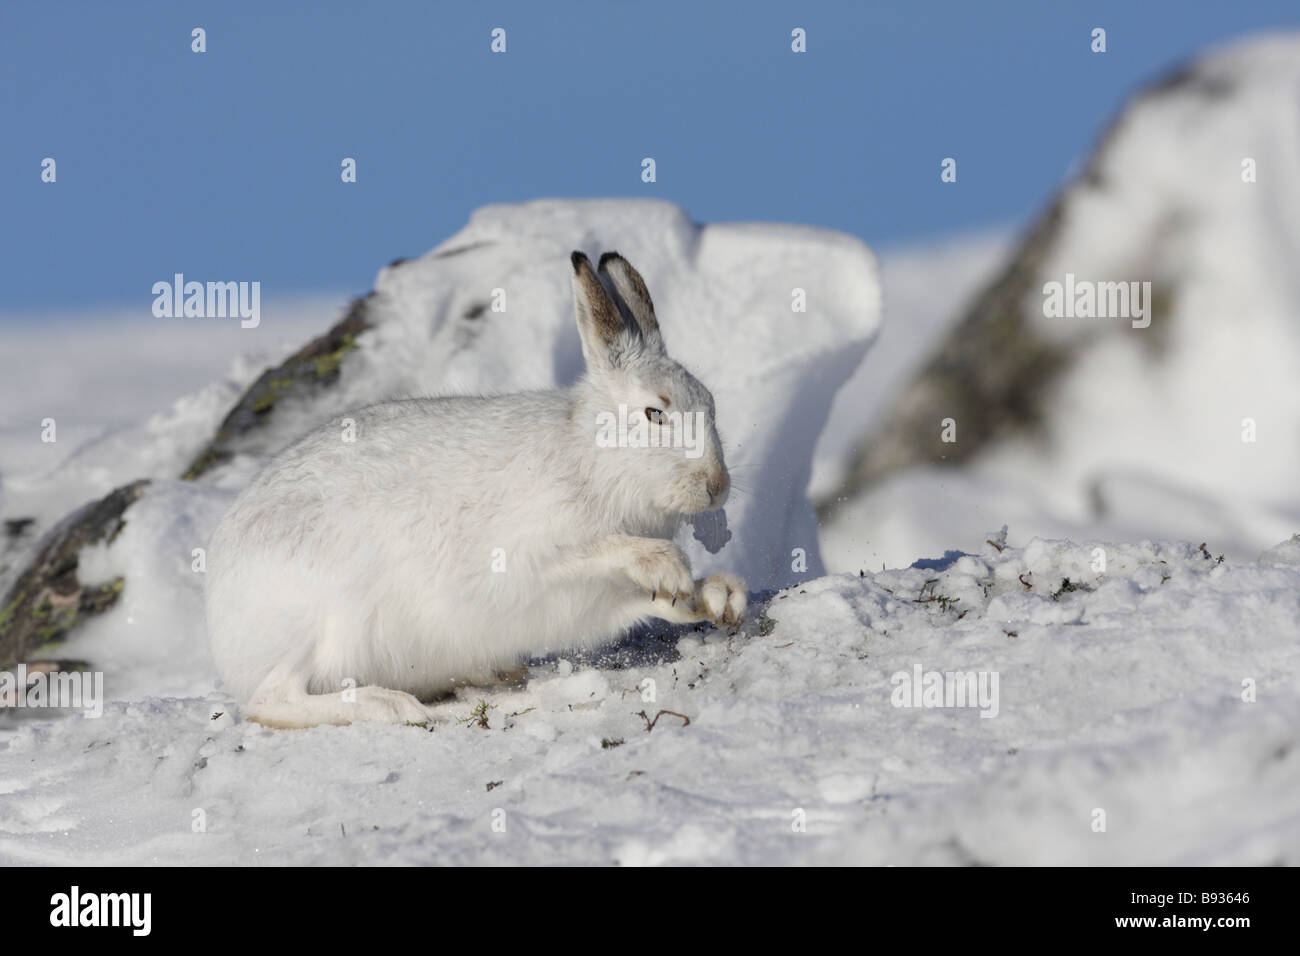 Liebre Lepus timidus montaña en invierno la nieve de raspado para dejar al descubierto la vegetación debajo Foto de stock